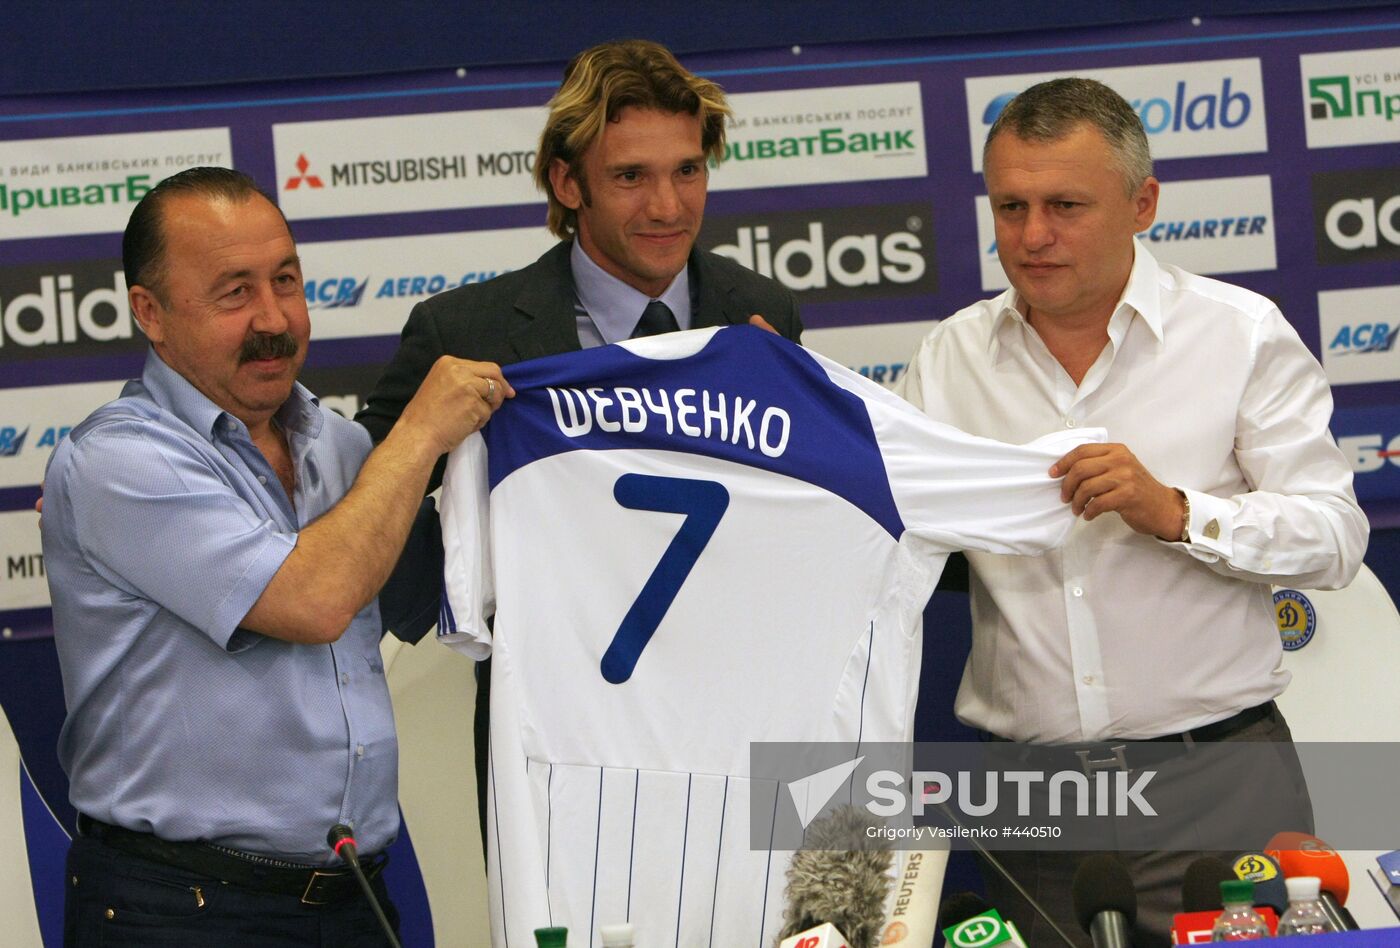 Andriy Shevchenko introduced as FC Dynamo player